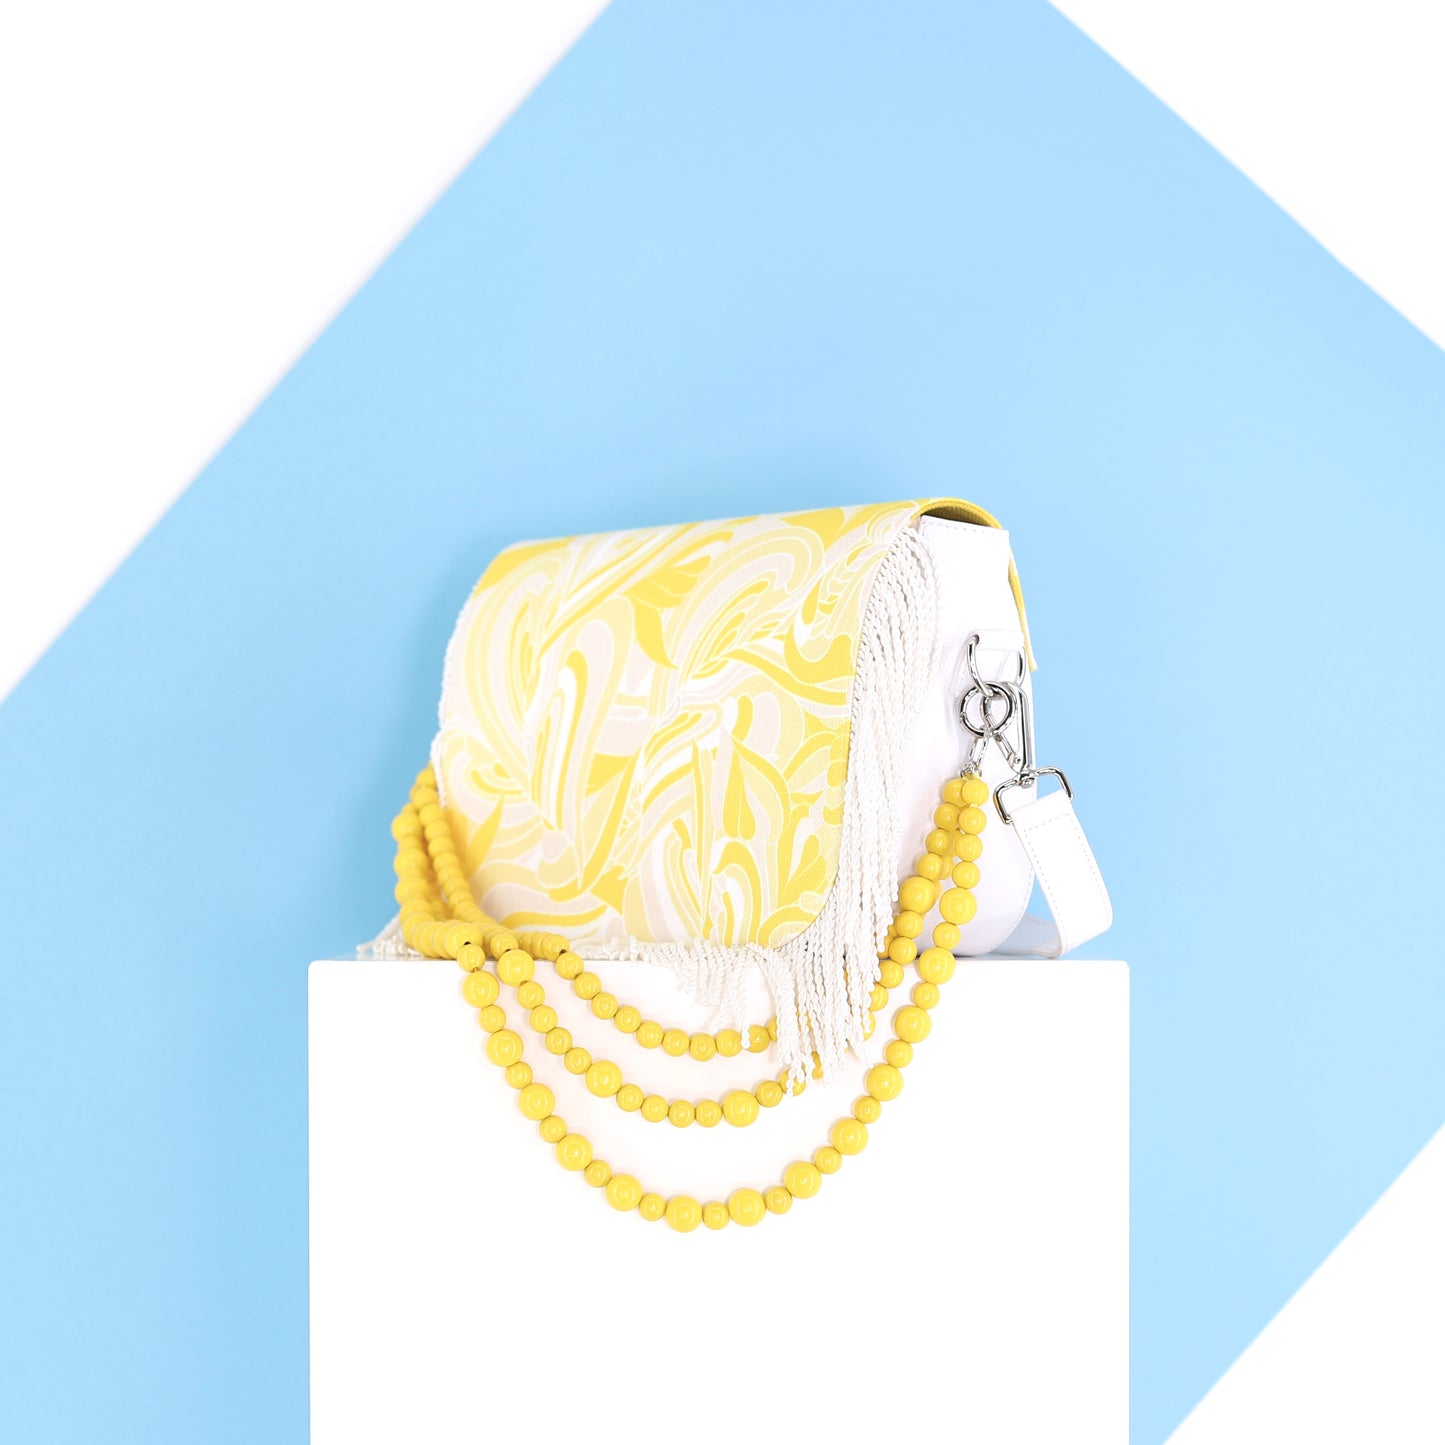 EMILIA Handtasche aus echtem Leder in weiß, medium